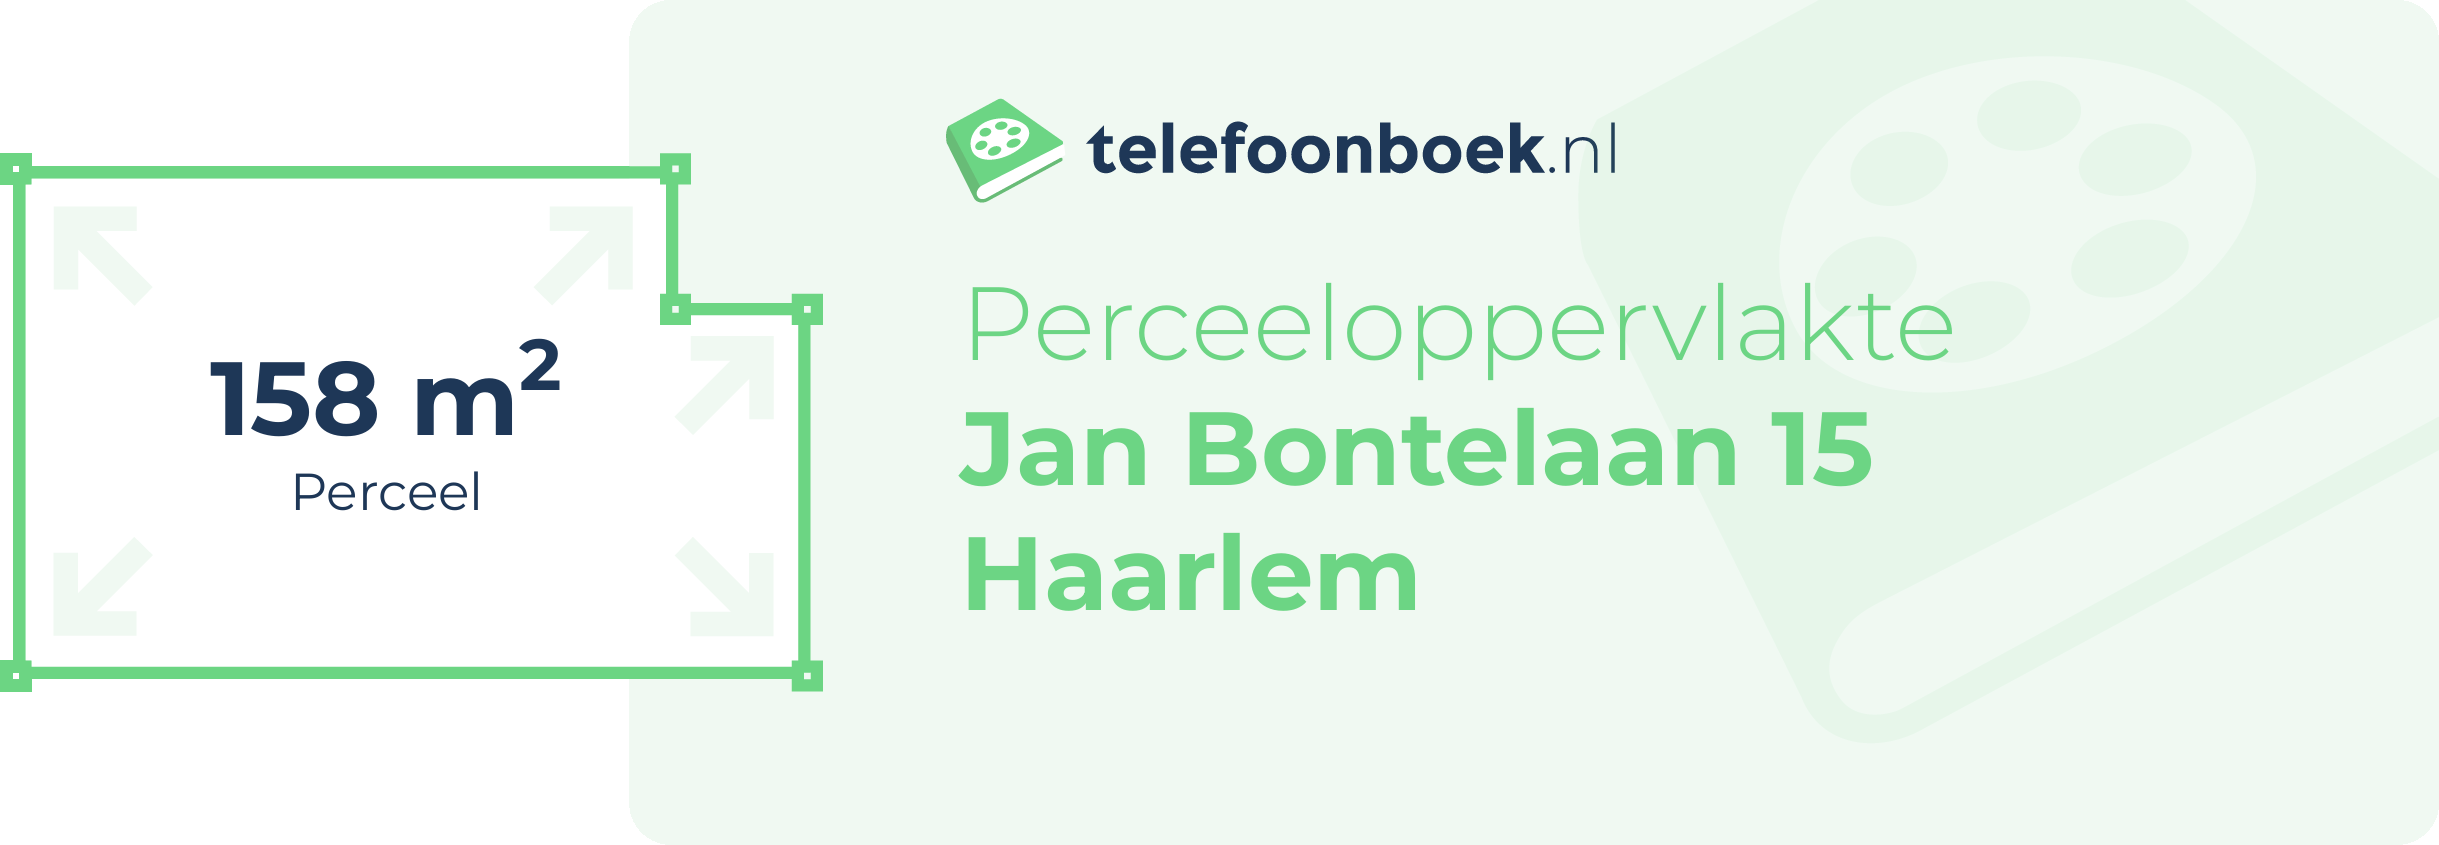 Perceeloppervlakte Jan Bontelaan 15 Haarlem